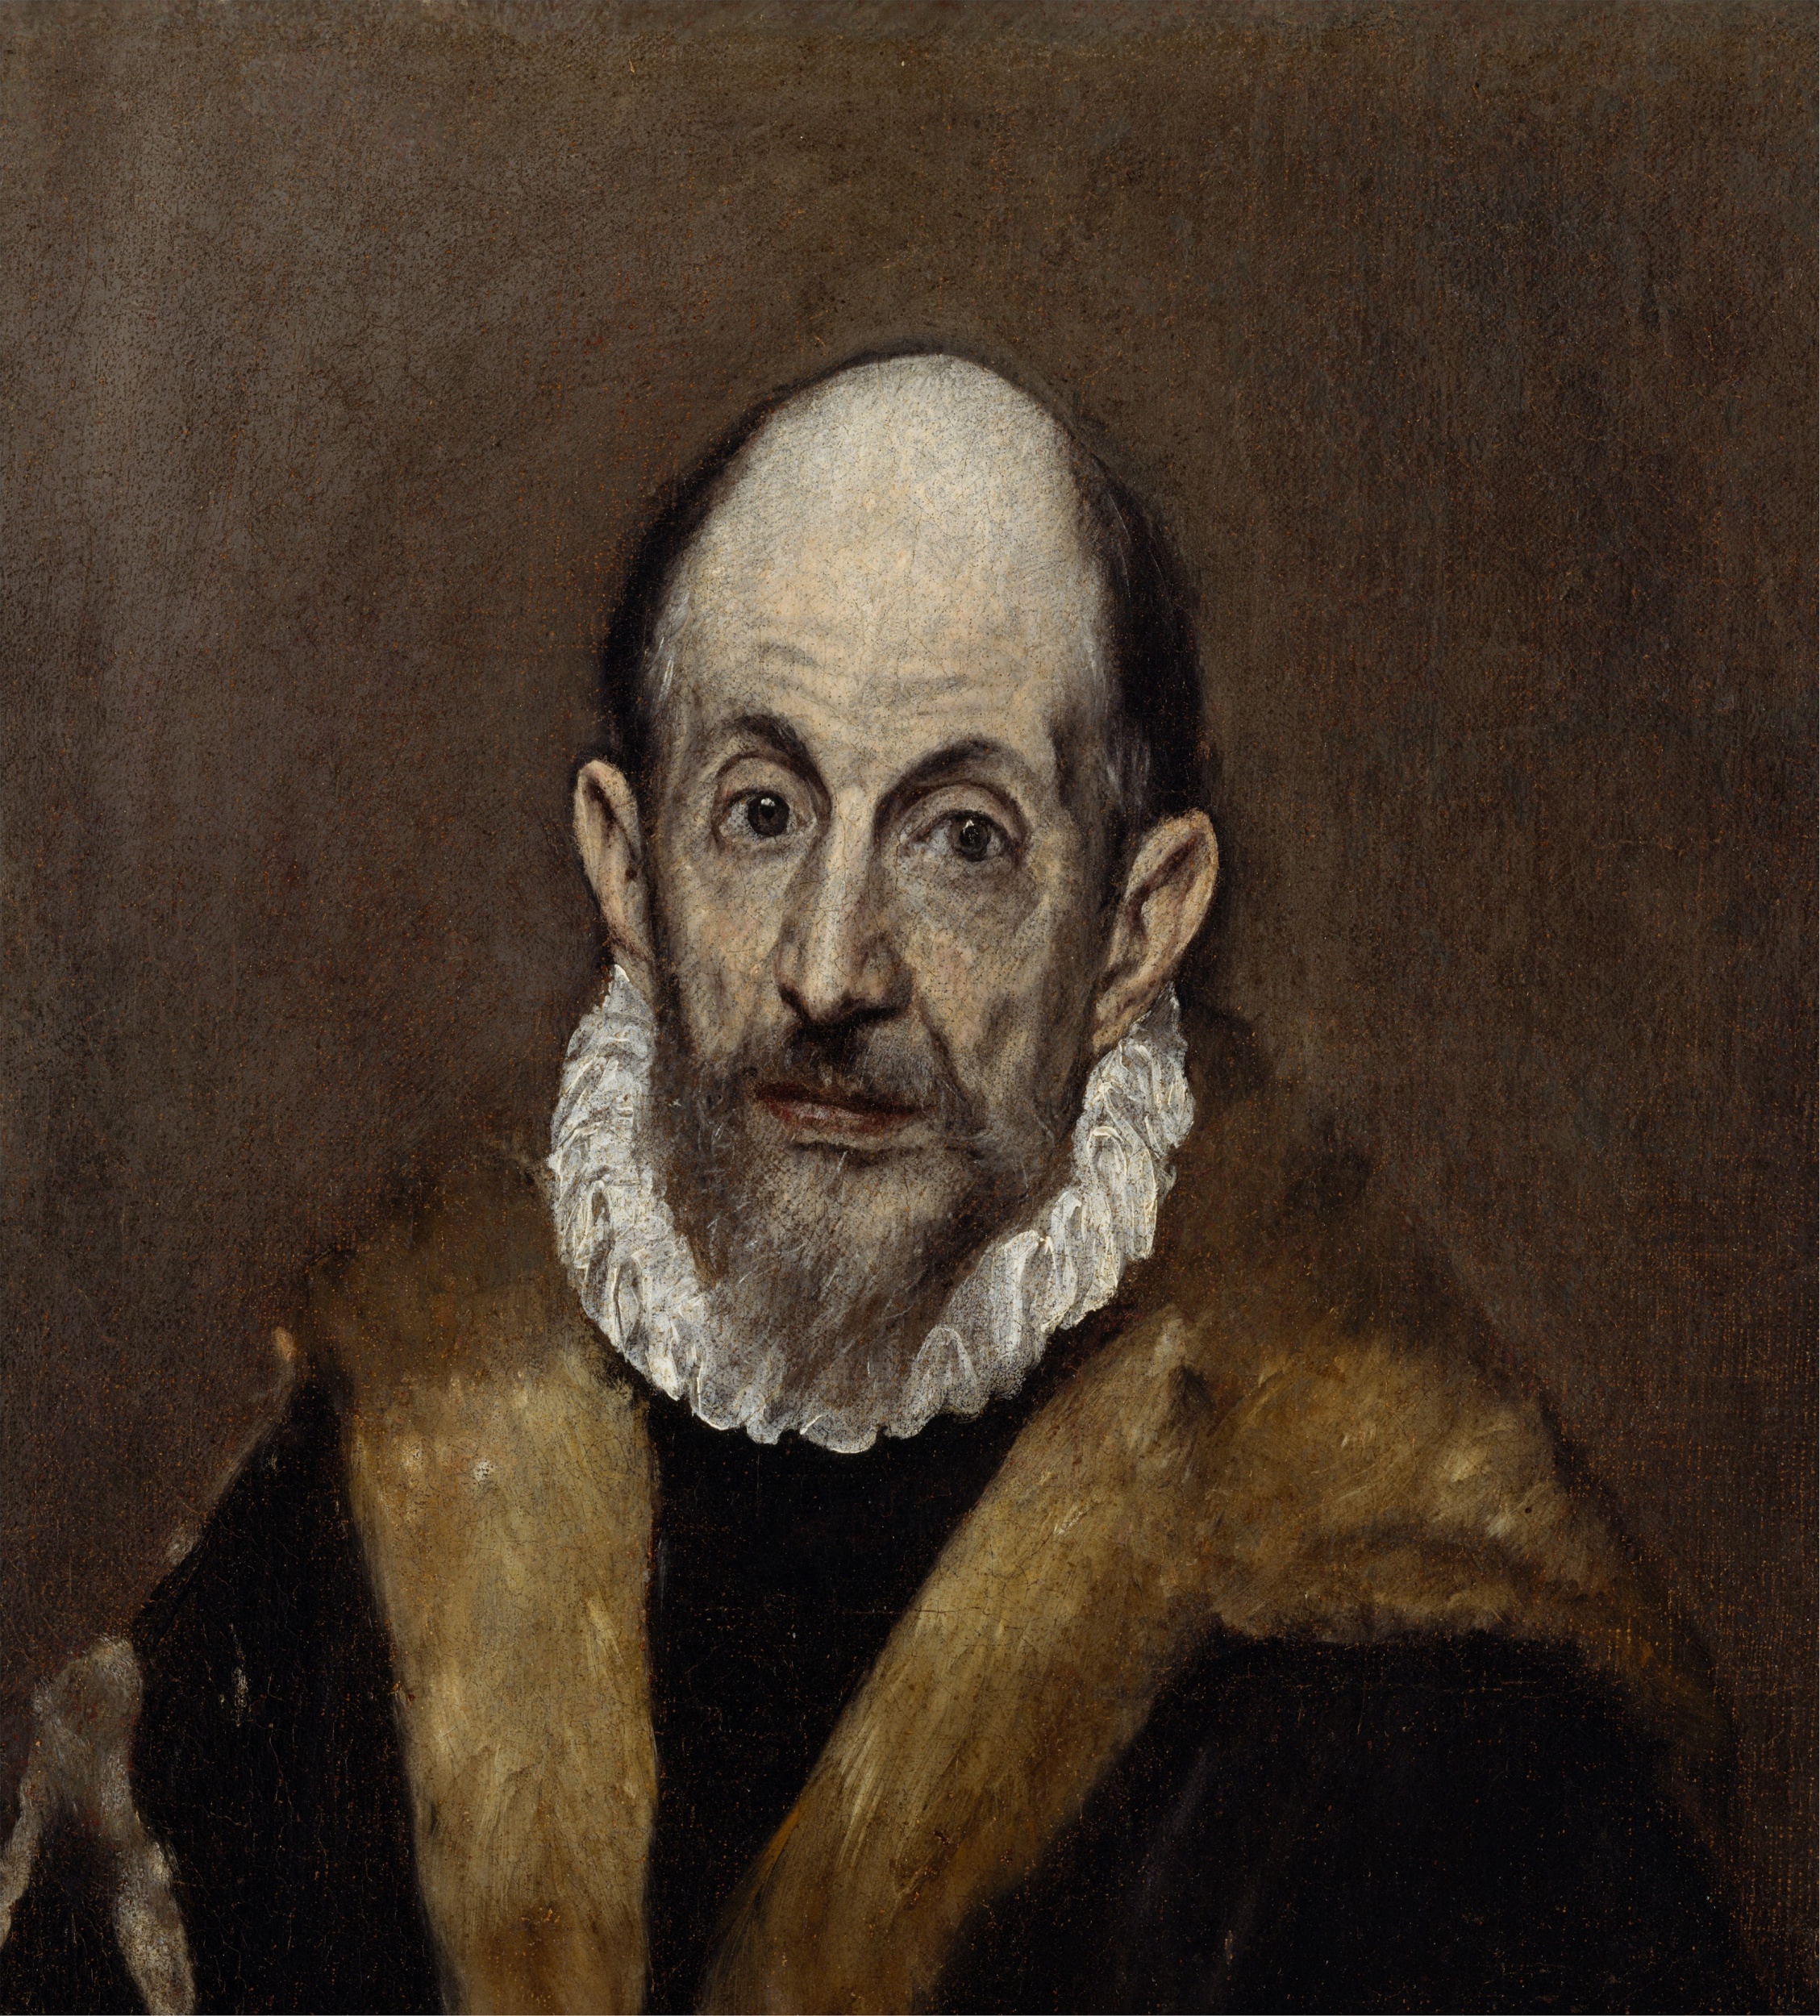 *El Greco, Portrait d'un vieil homme, ca. 1595-1600, The Metropolitain Museum, New York*